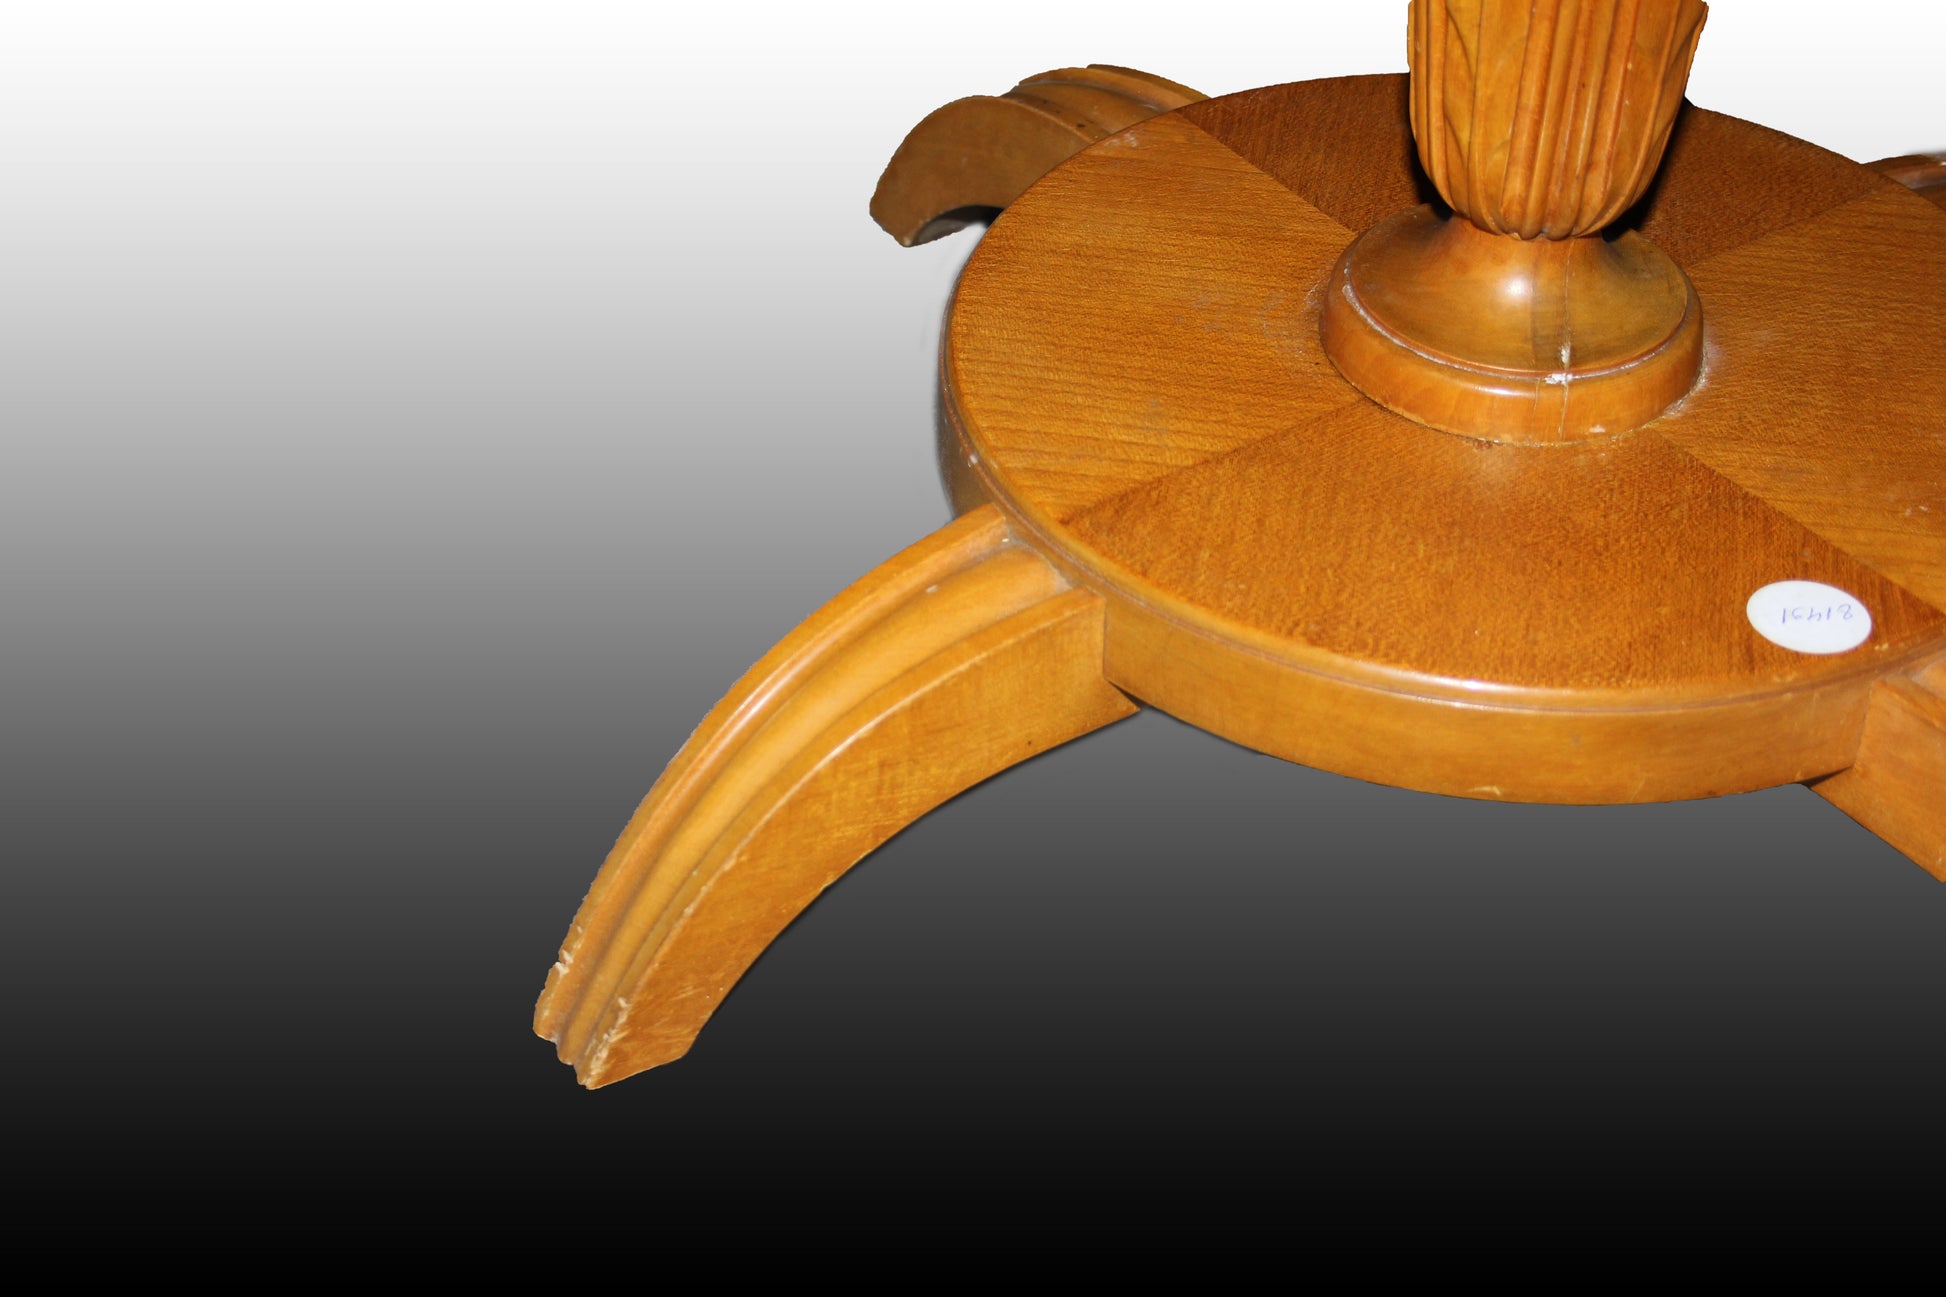 Tavolino basso stile Biedermeier in legno di olmo e radica di olmo